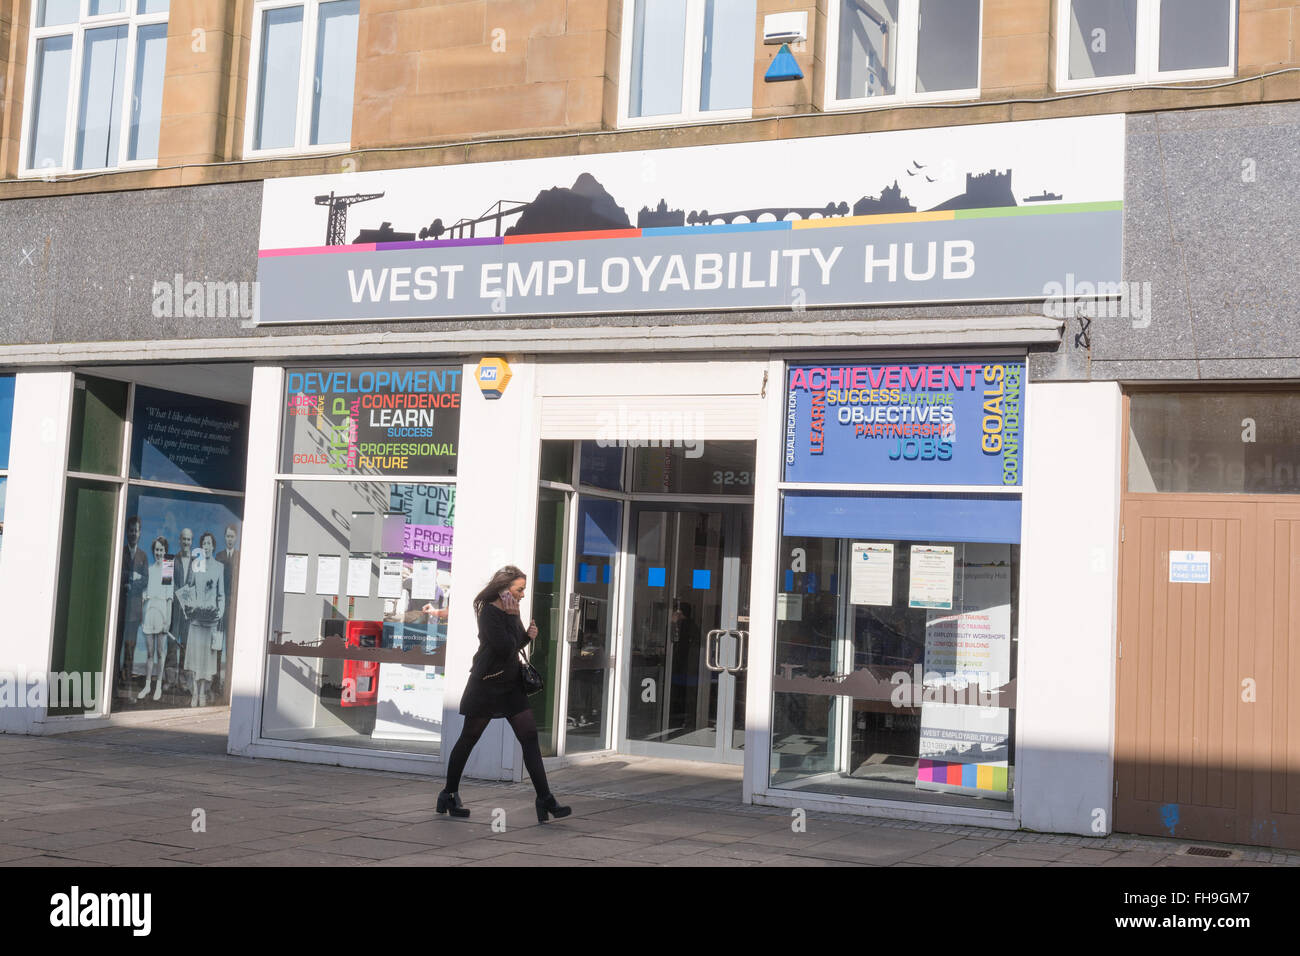 Le moyeu de l'employabilité de l'Ouest - un centre d'emplois pour les jeunes - Dumbarton, West Dunbartonshire, Écosse, Royaume-Uni Banque D'Images